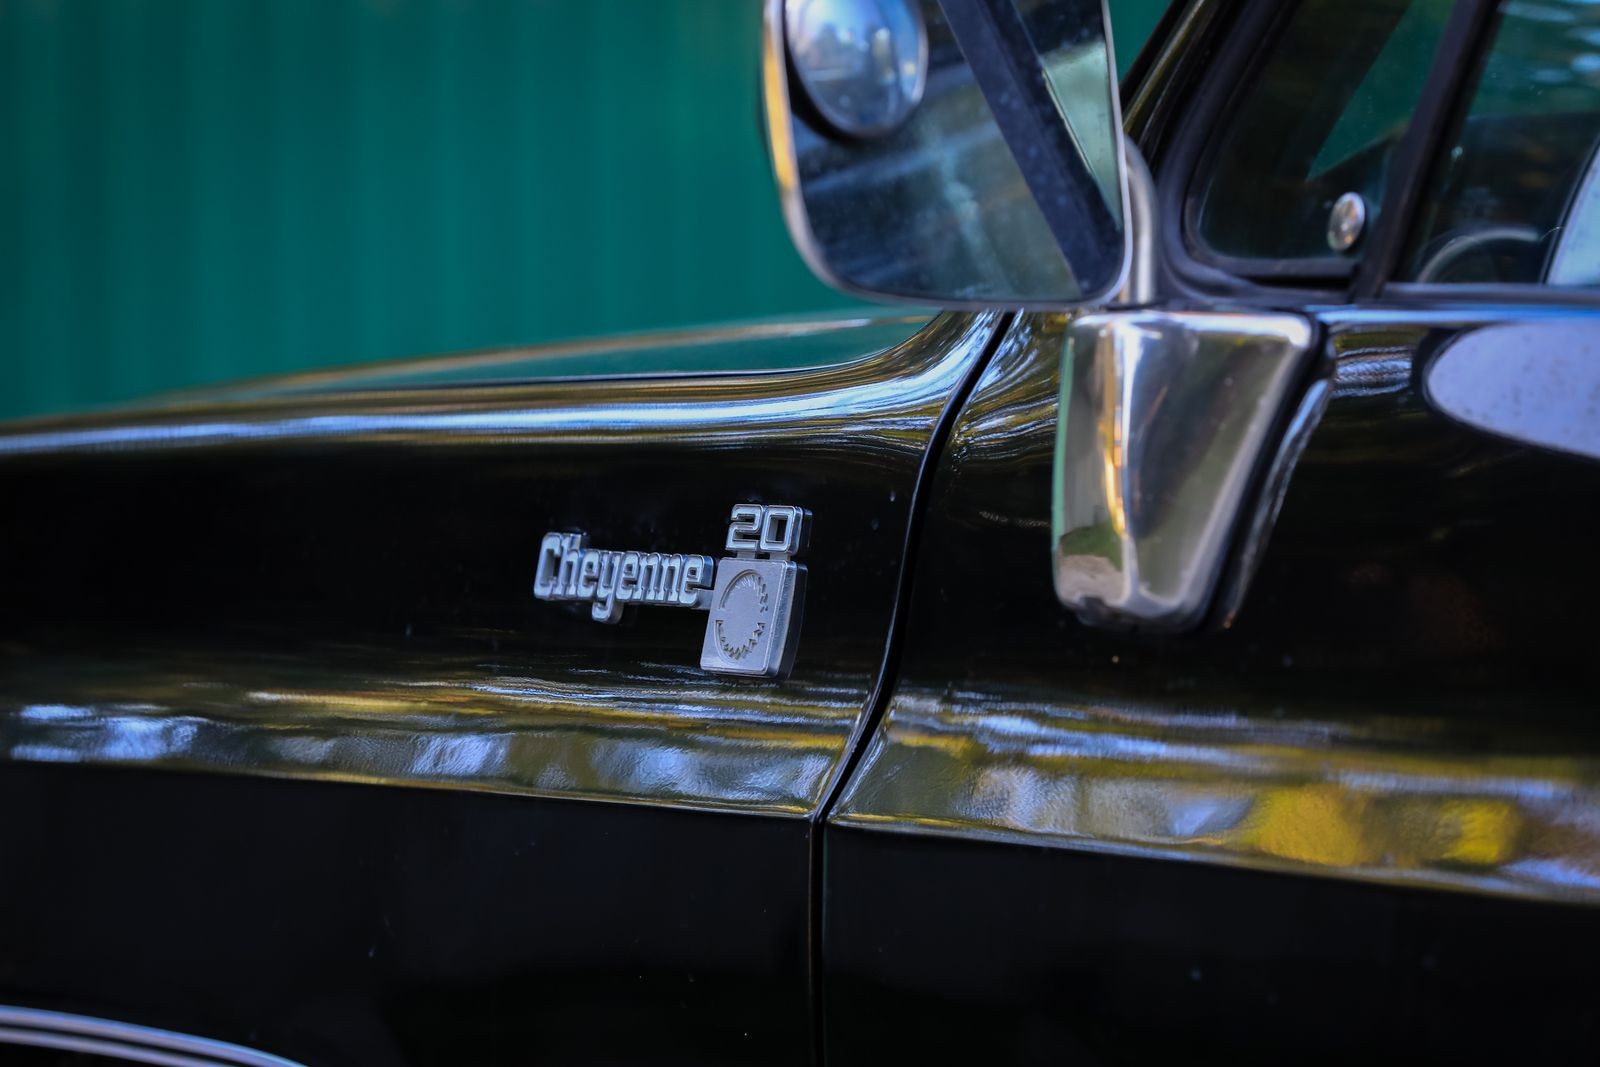 Мотор 7,4 V8, и по грунтовке, как по автобану: опыт владения Chevrolet C-20 Cheyenne 1973